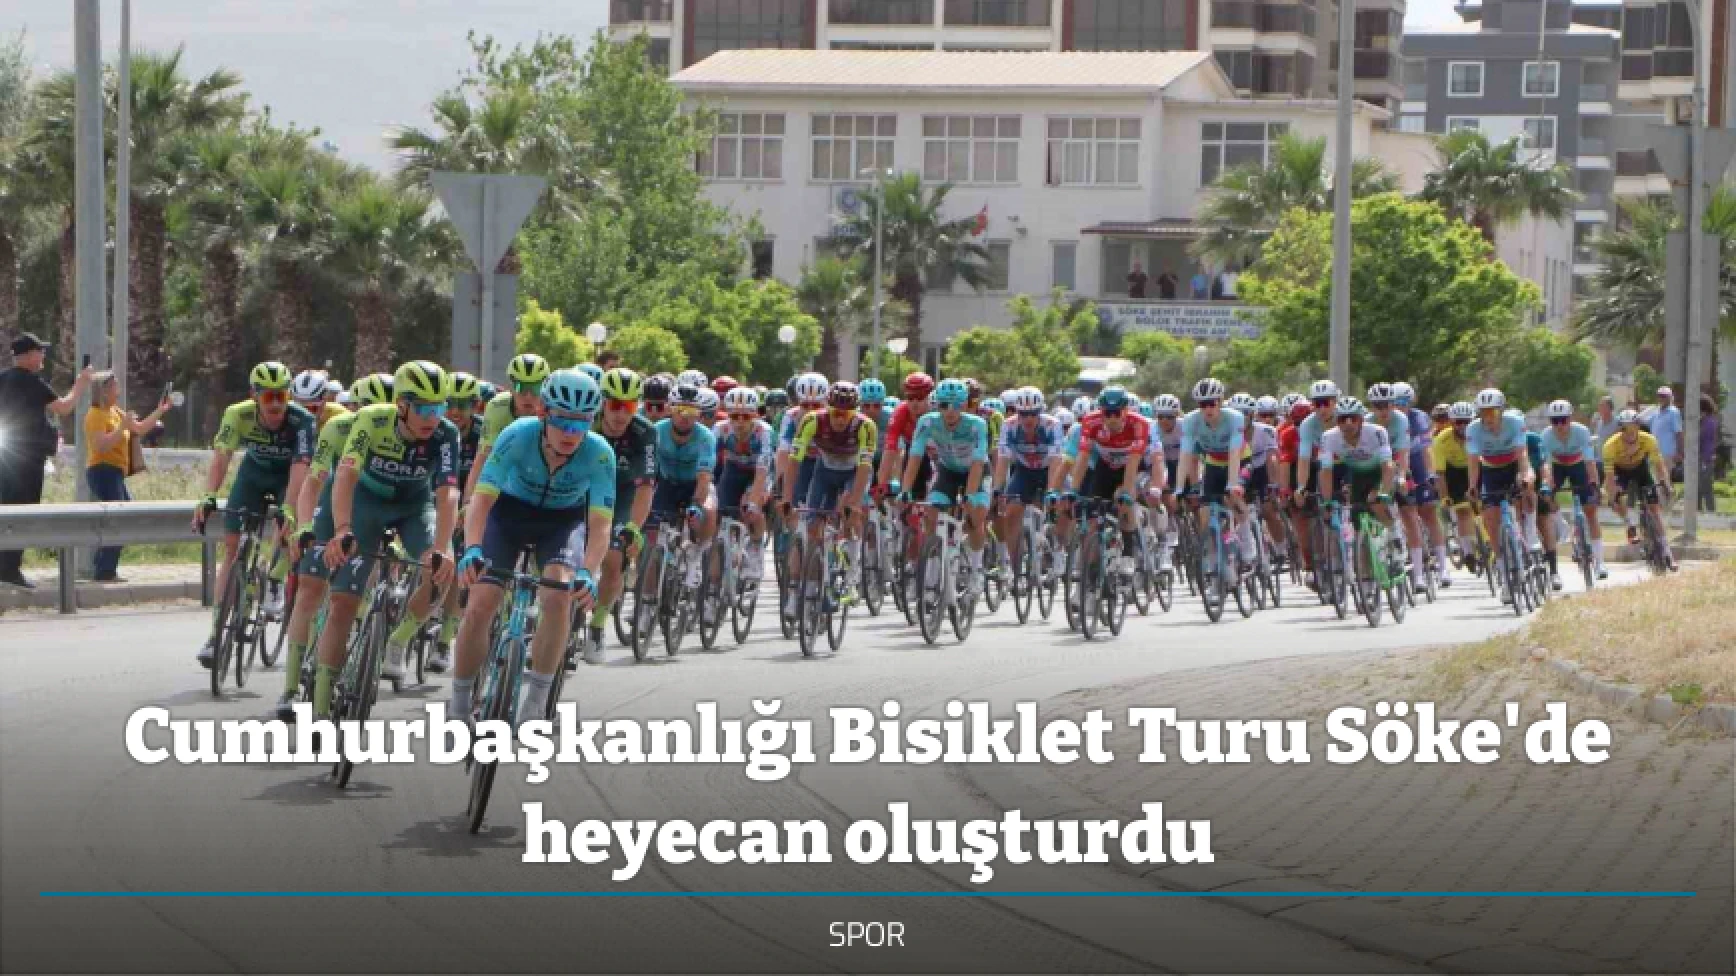 Cumhurbaşkanlığı Bisiklet Turu Söke'de heyecan oluşturdu